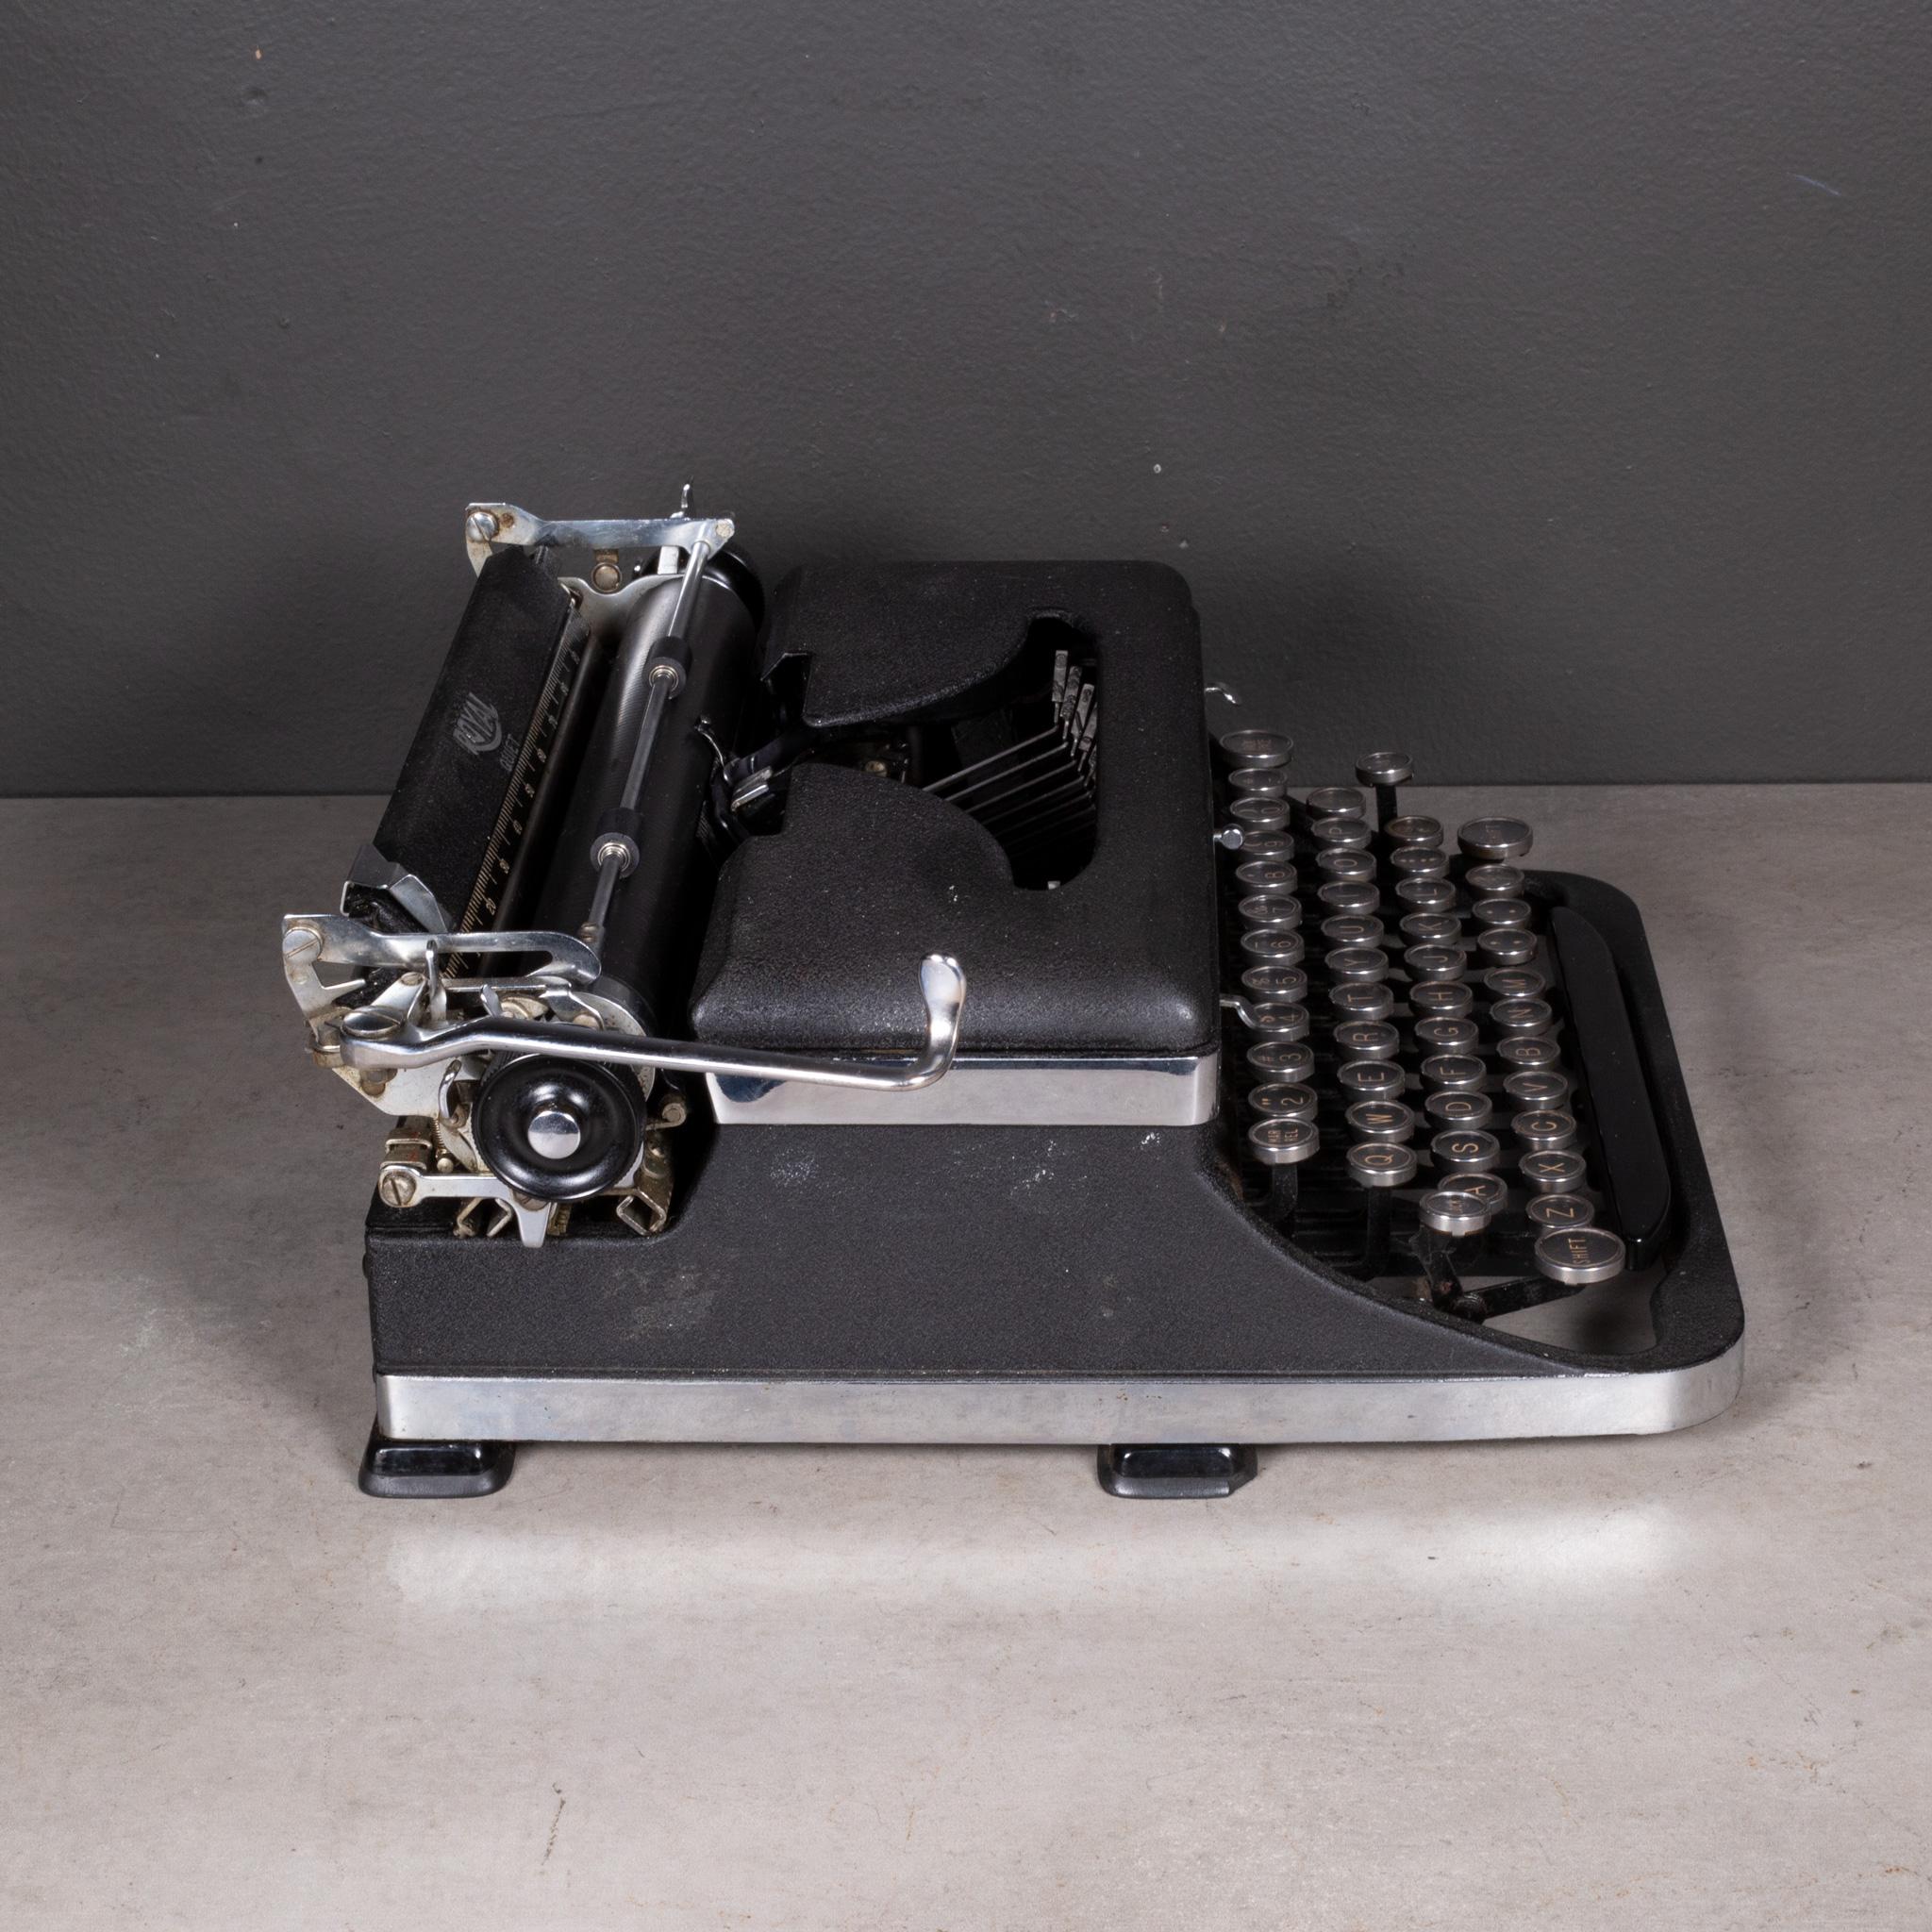 Antique Art Deco Royal Portable Typewriter c.1935 1